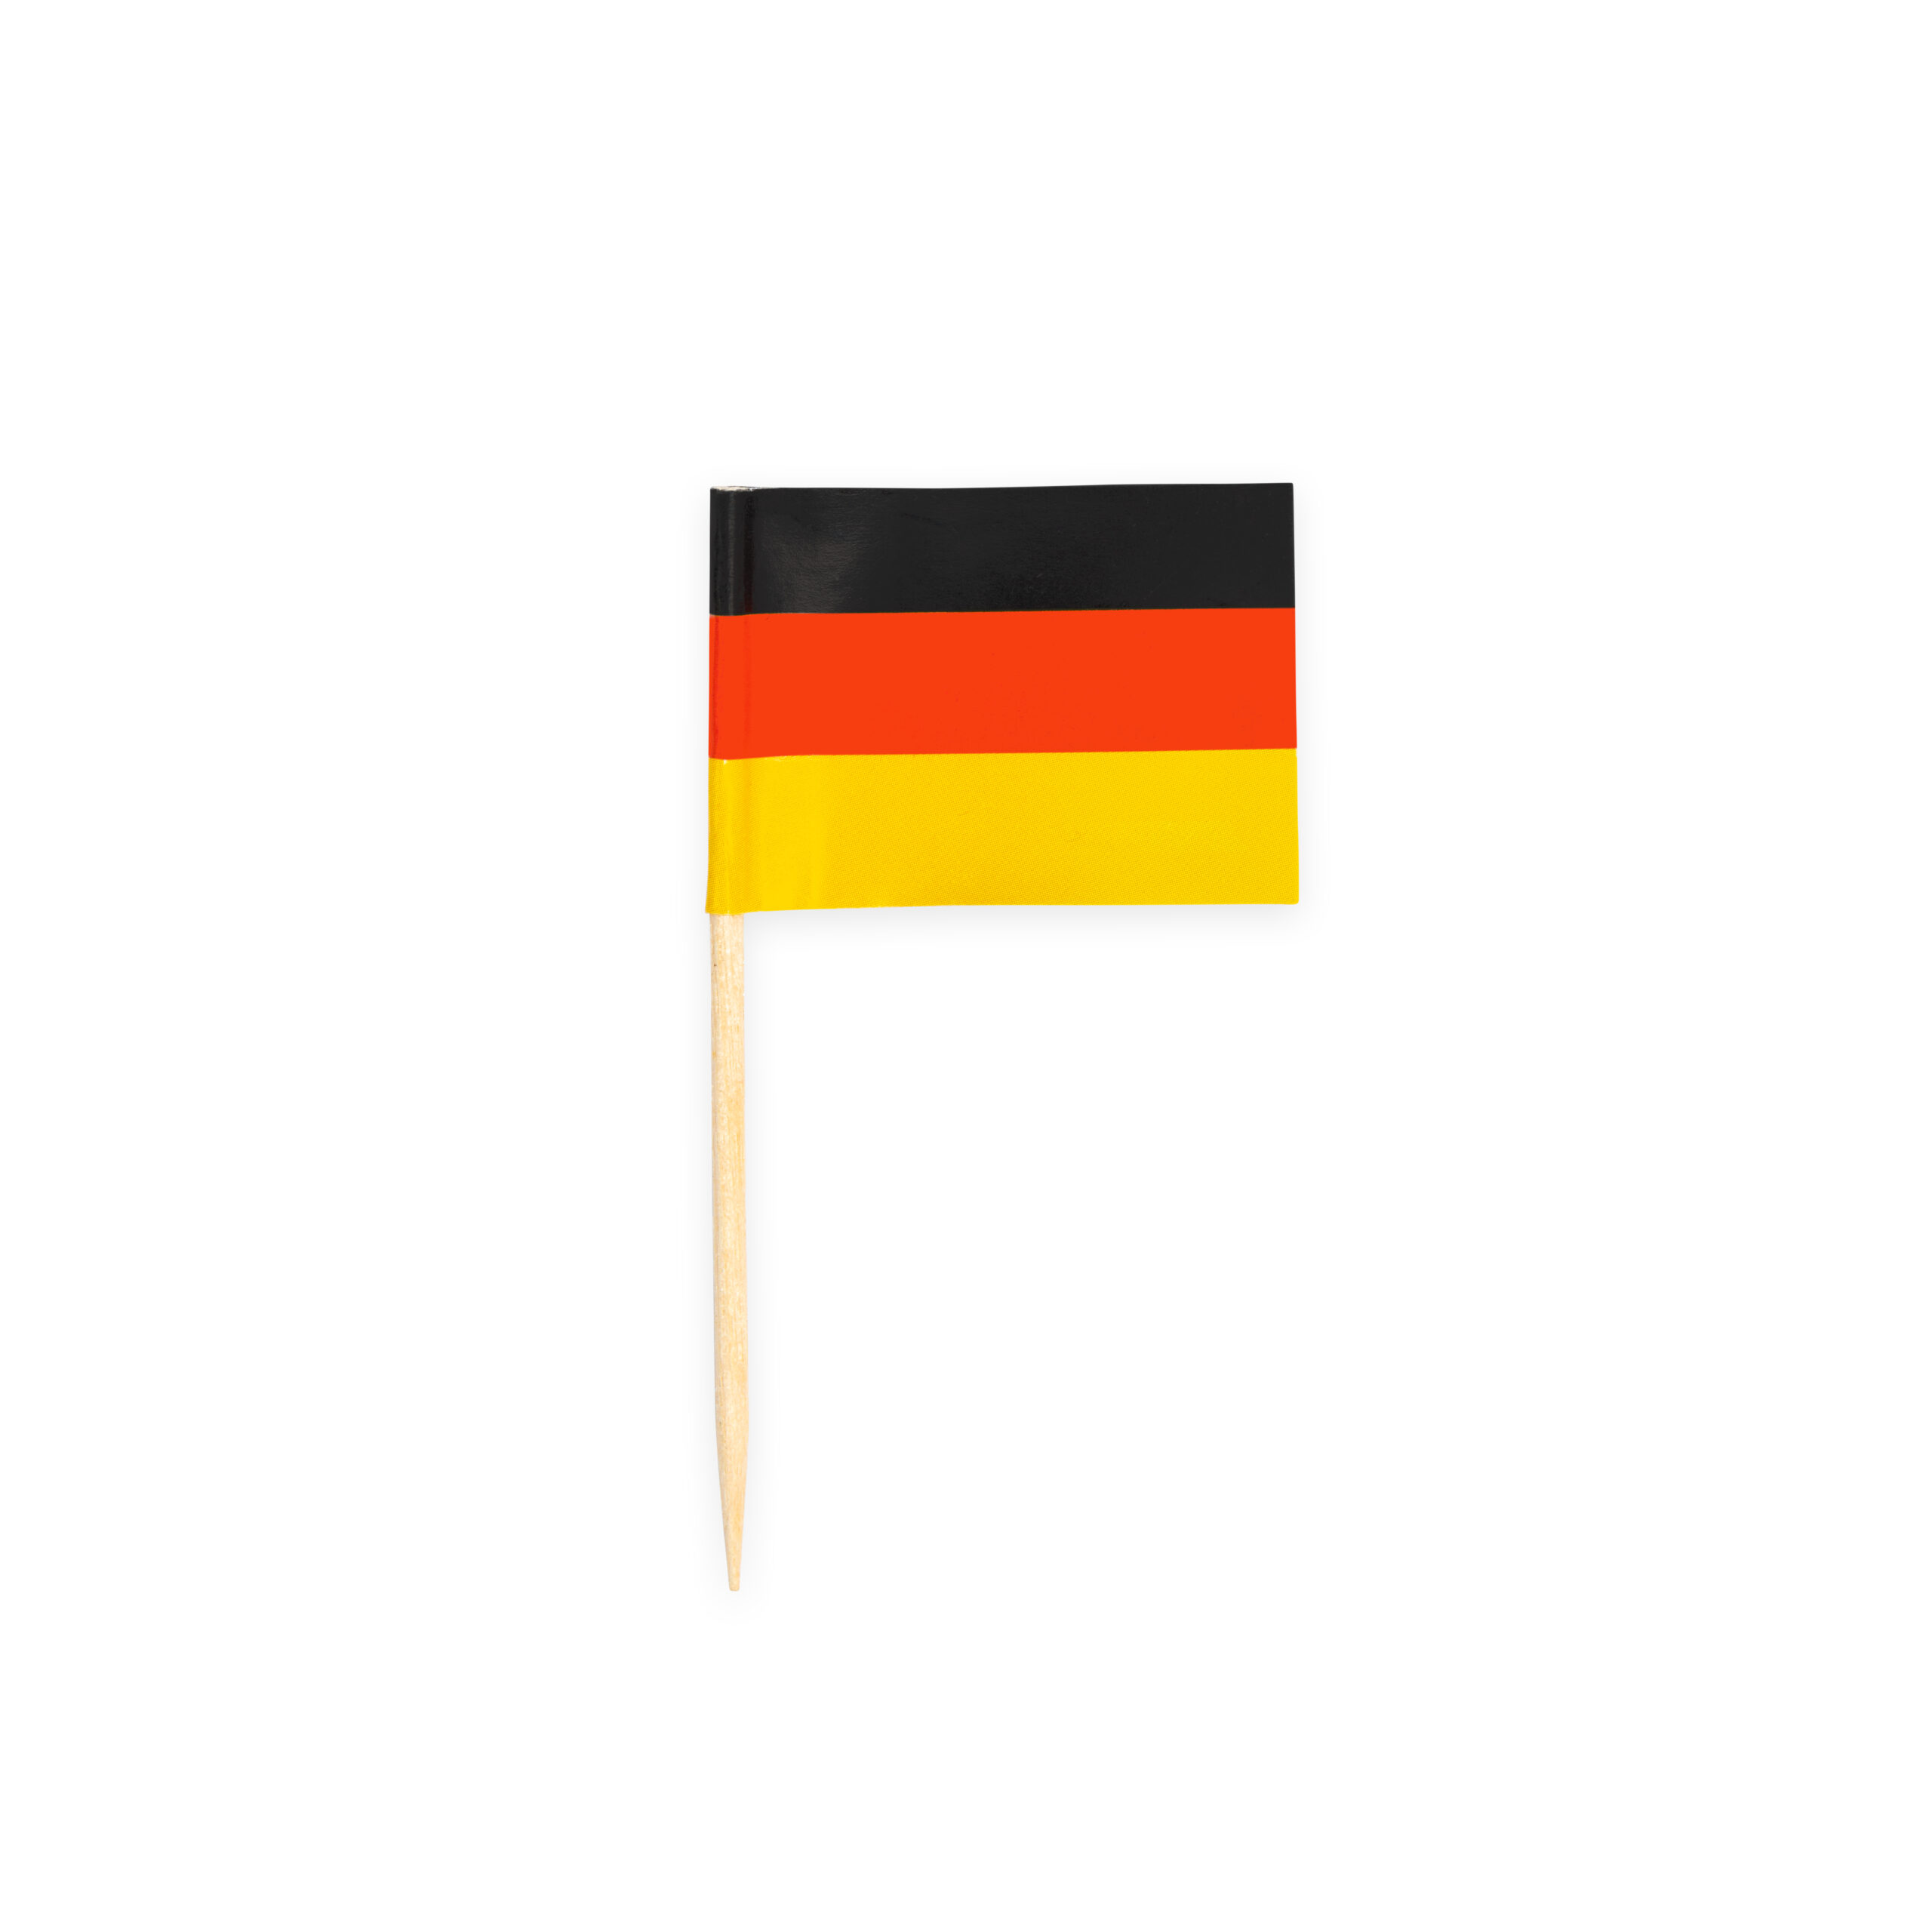 50st Prikkertjes Vlag Duitsland